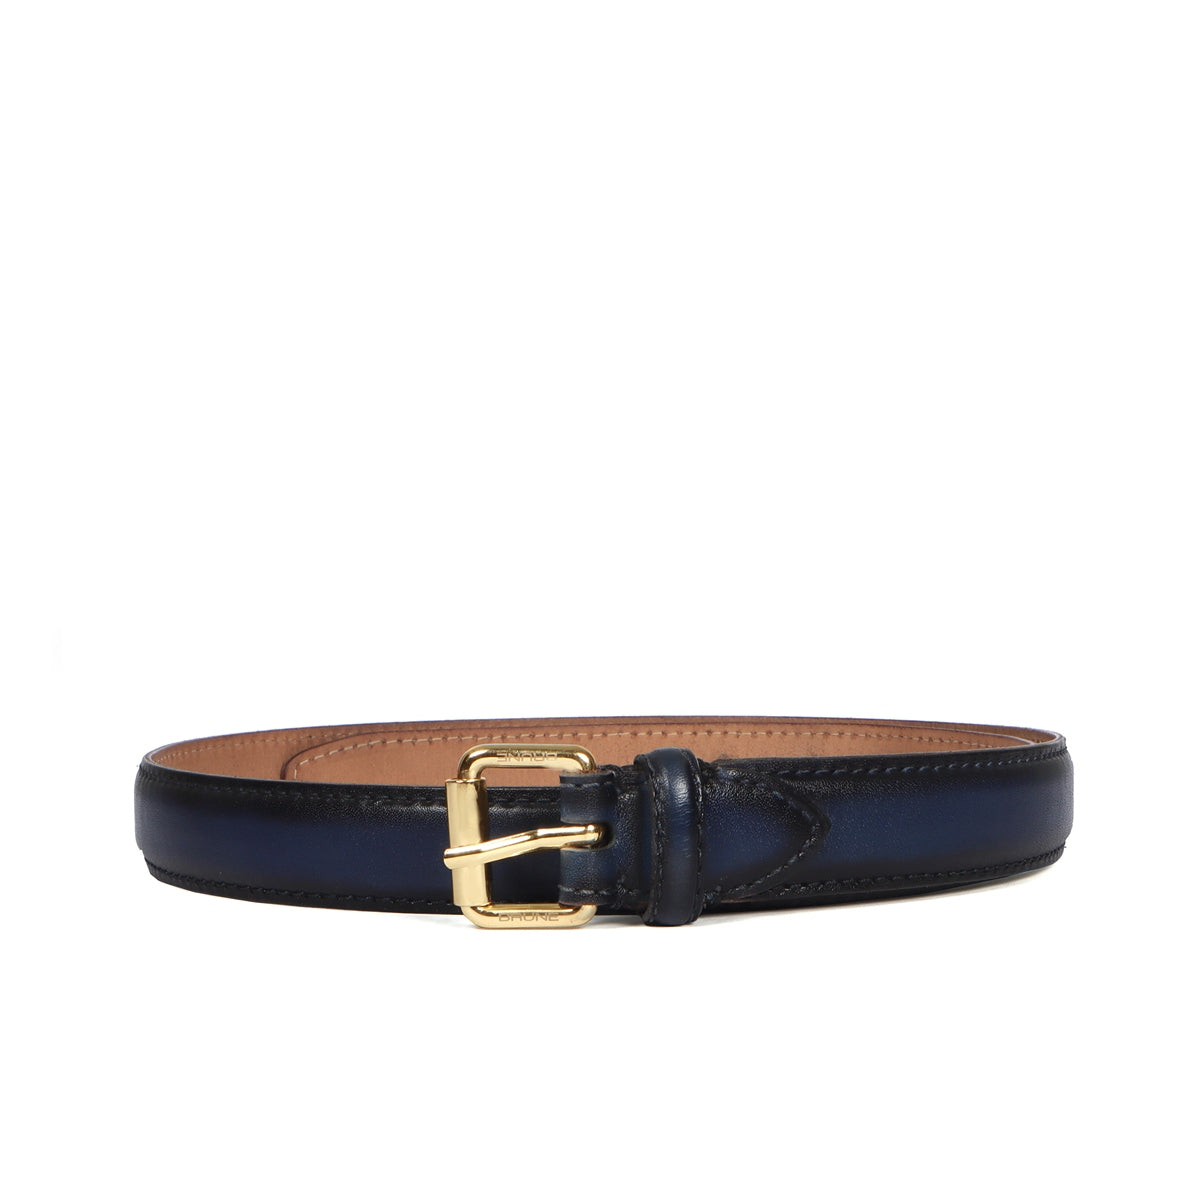 Antique Look Golden Buckle Ladies Belt In Blue Leather